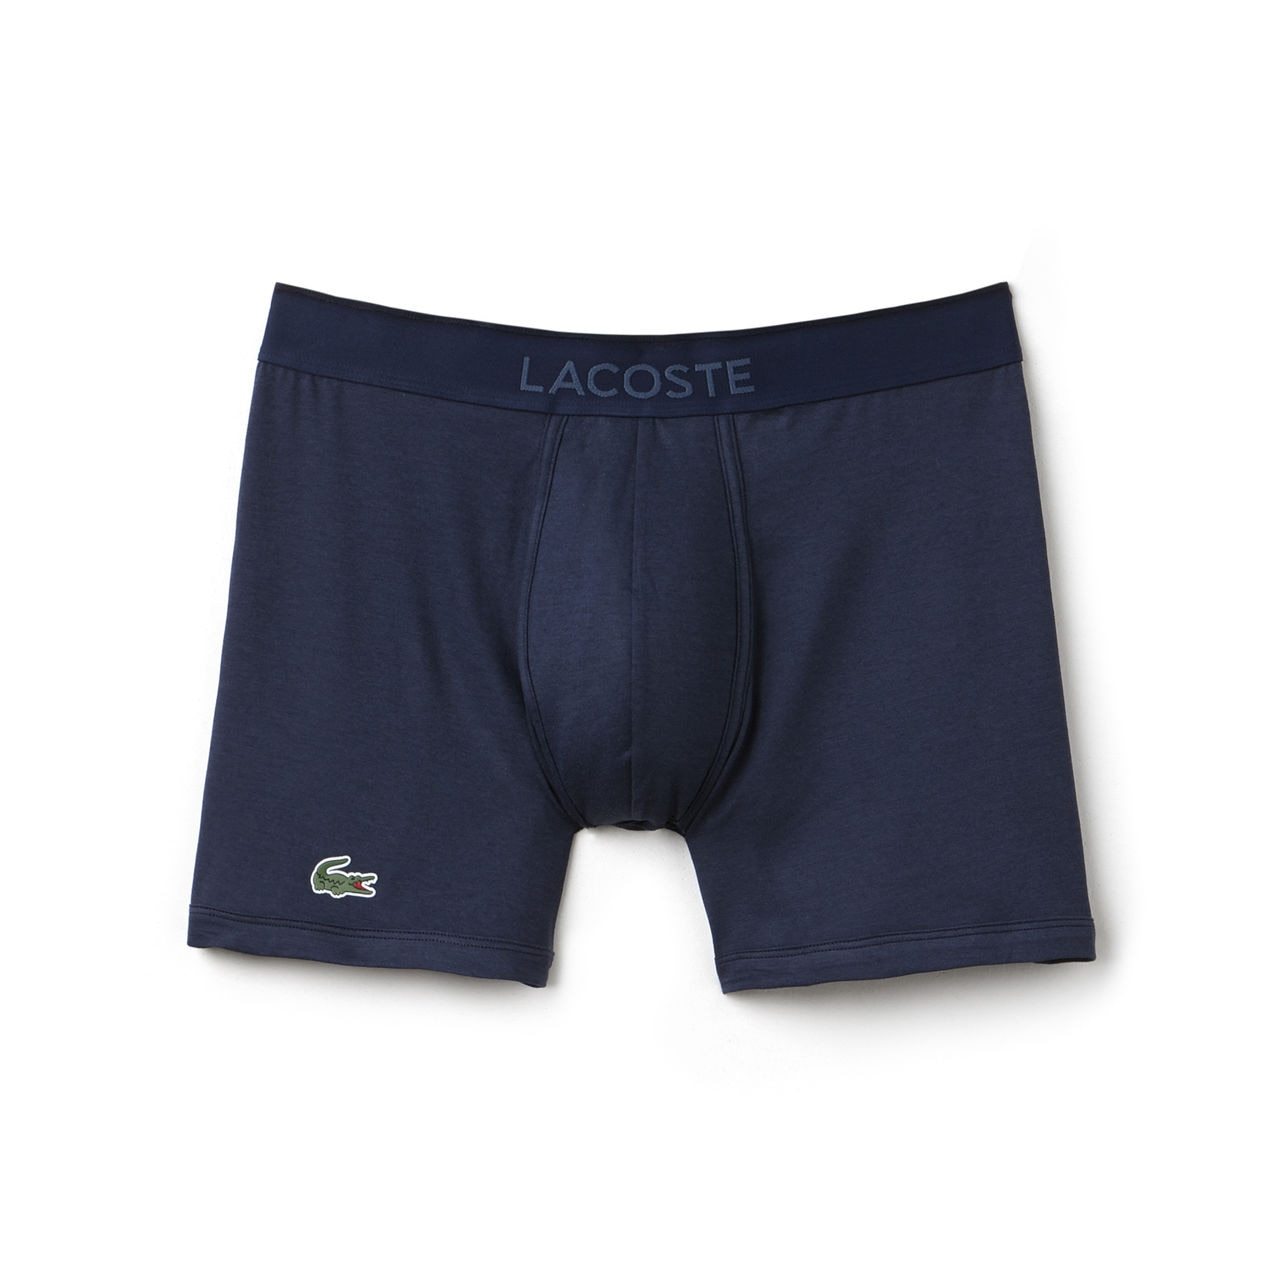 Lacoste Underwear: Boxer Shorts & Briefs